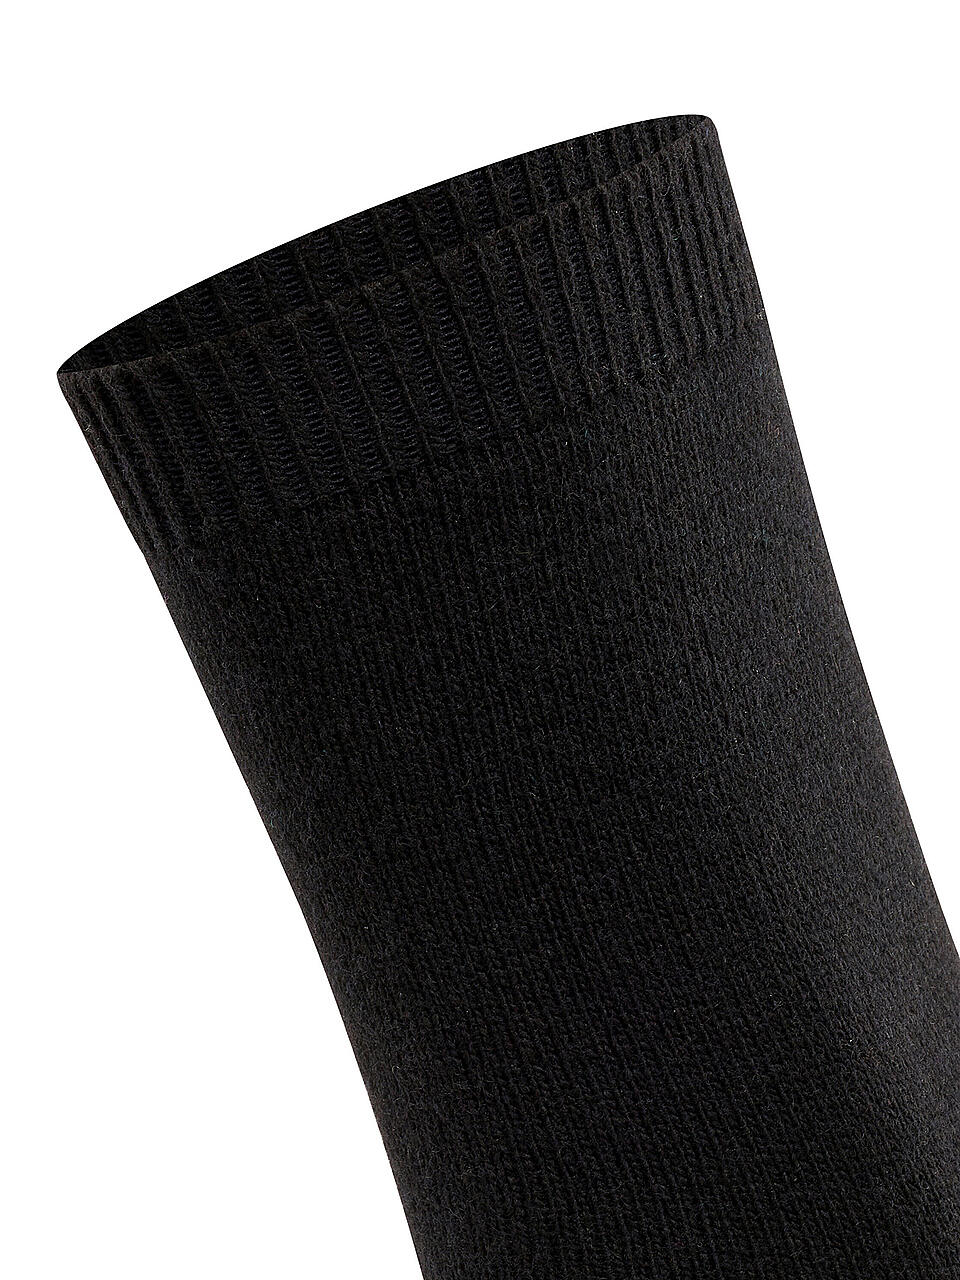 FALKE | Socken "Cosy Wool" 47548 black | schwarz